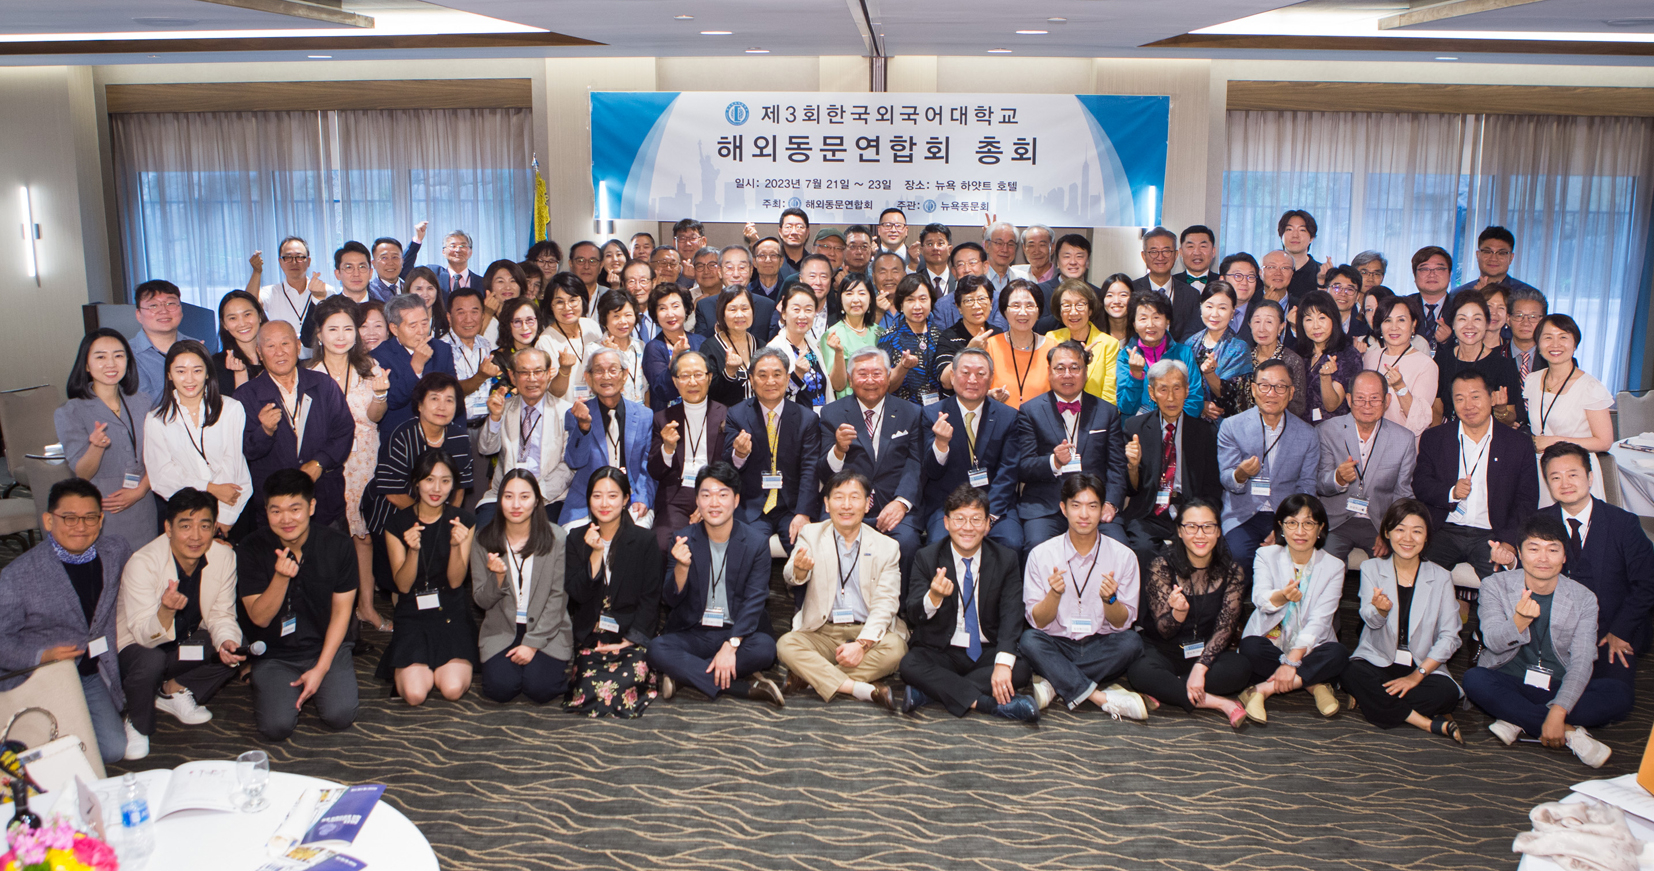 한국외대 해외동문연합회는 지난 21일부터 23일까지 뉴욕 하얏트 호텔에서 150여 명이 참석한 가운데 '제3회 한국 외국어대학교 해외 동문연합회 총회'를 개최했다. [한국외대 뉴욕동문회] 